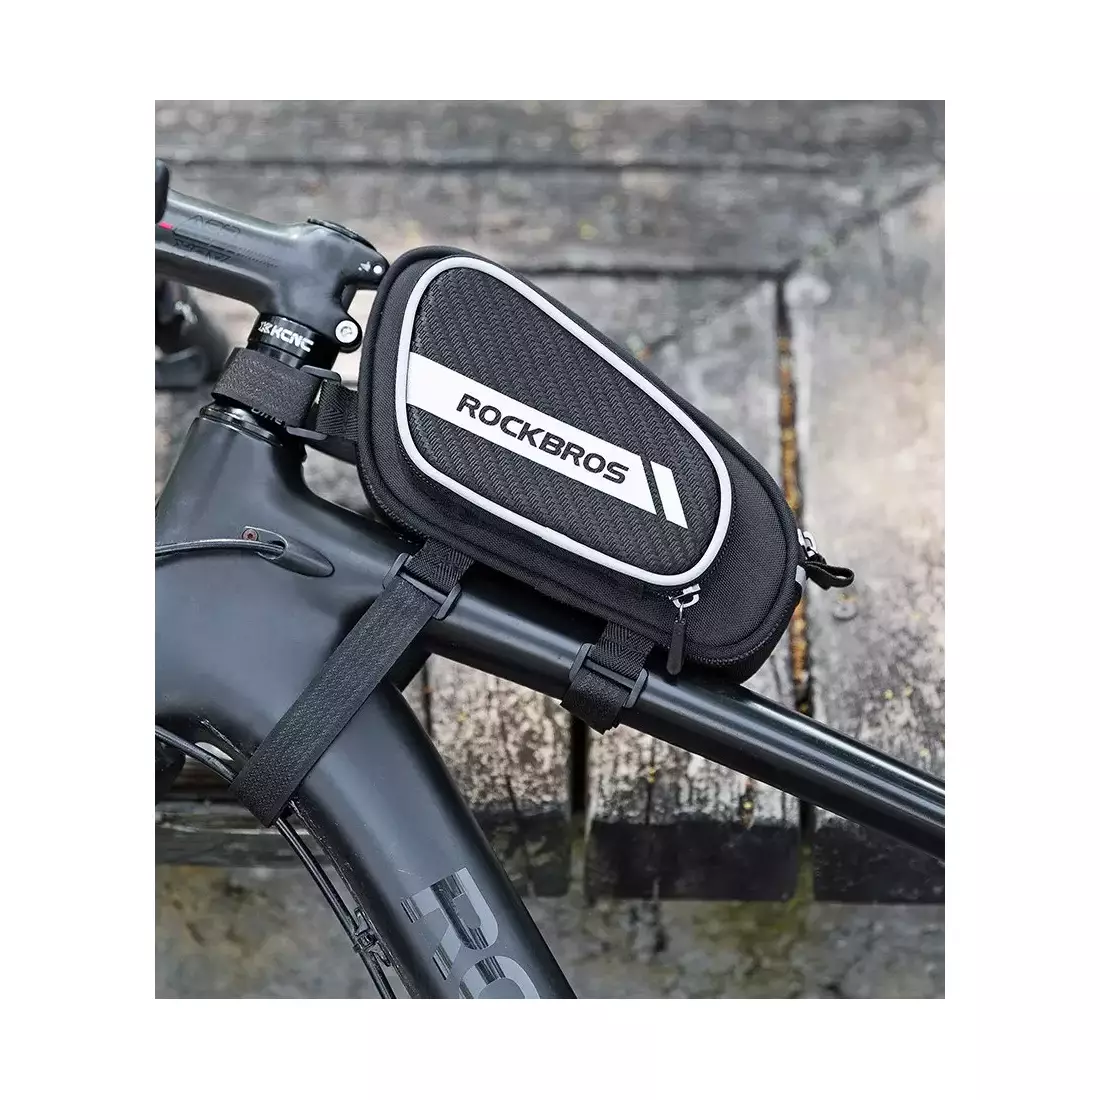 Rockbros Fahrradtasche / Packtasche unter Rahmen 1,8l schwarz  006-1BK